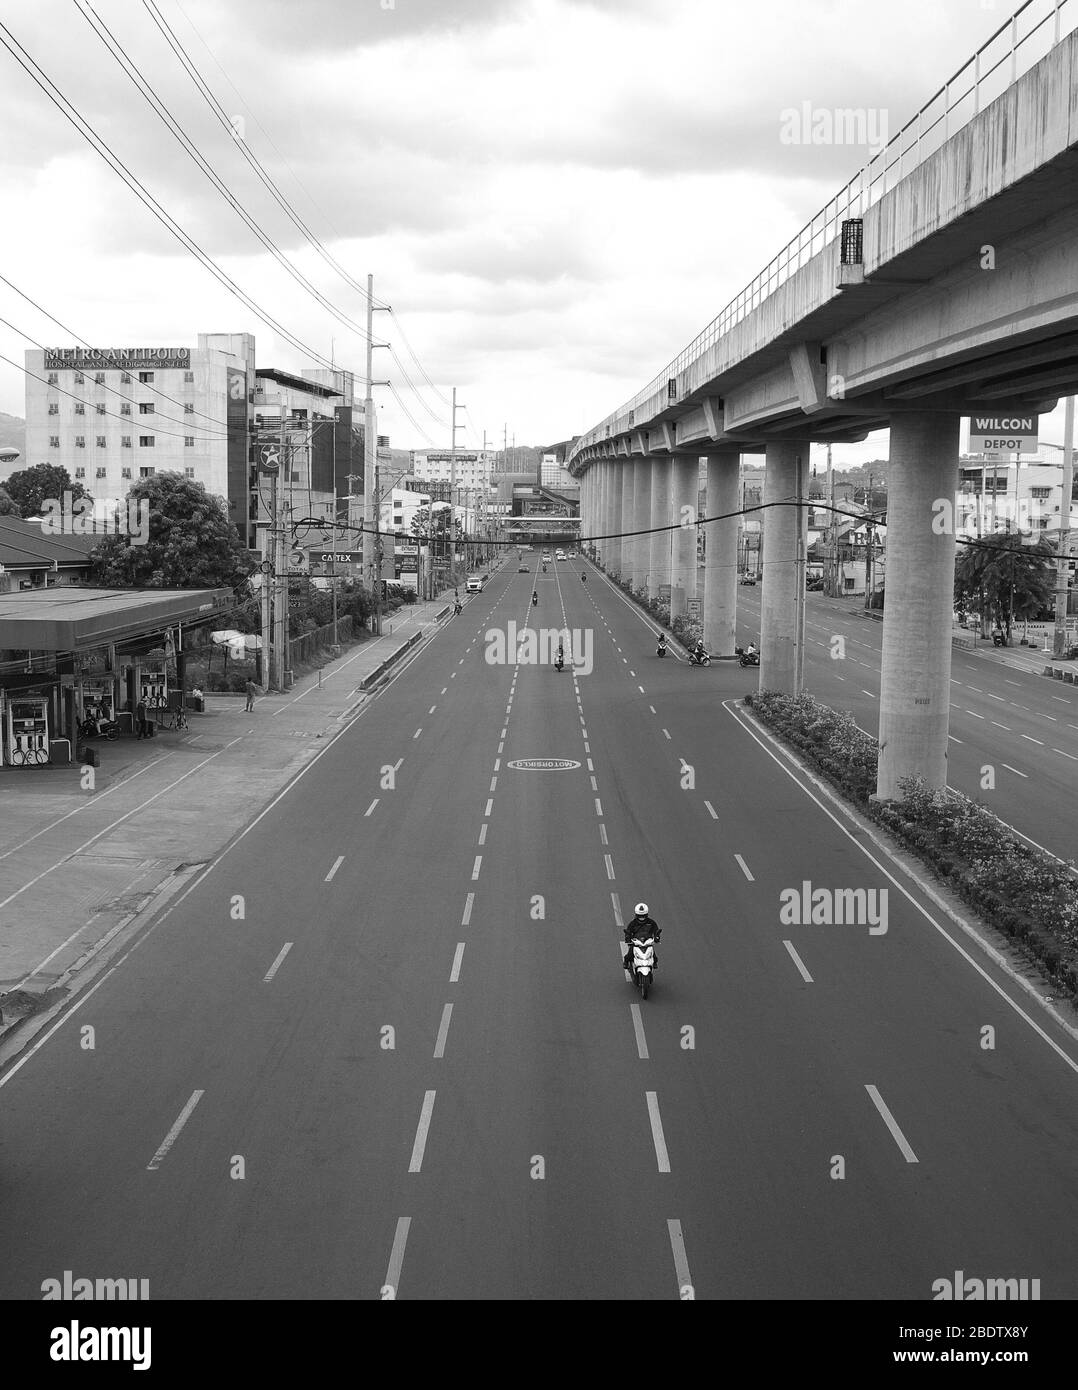 9 avril 2020 moto Rizal navigue par une autoroute vide Marcos à Antipolo Rizal (Philippines). Banque D'Images